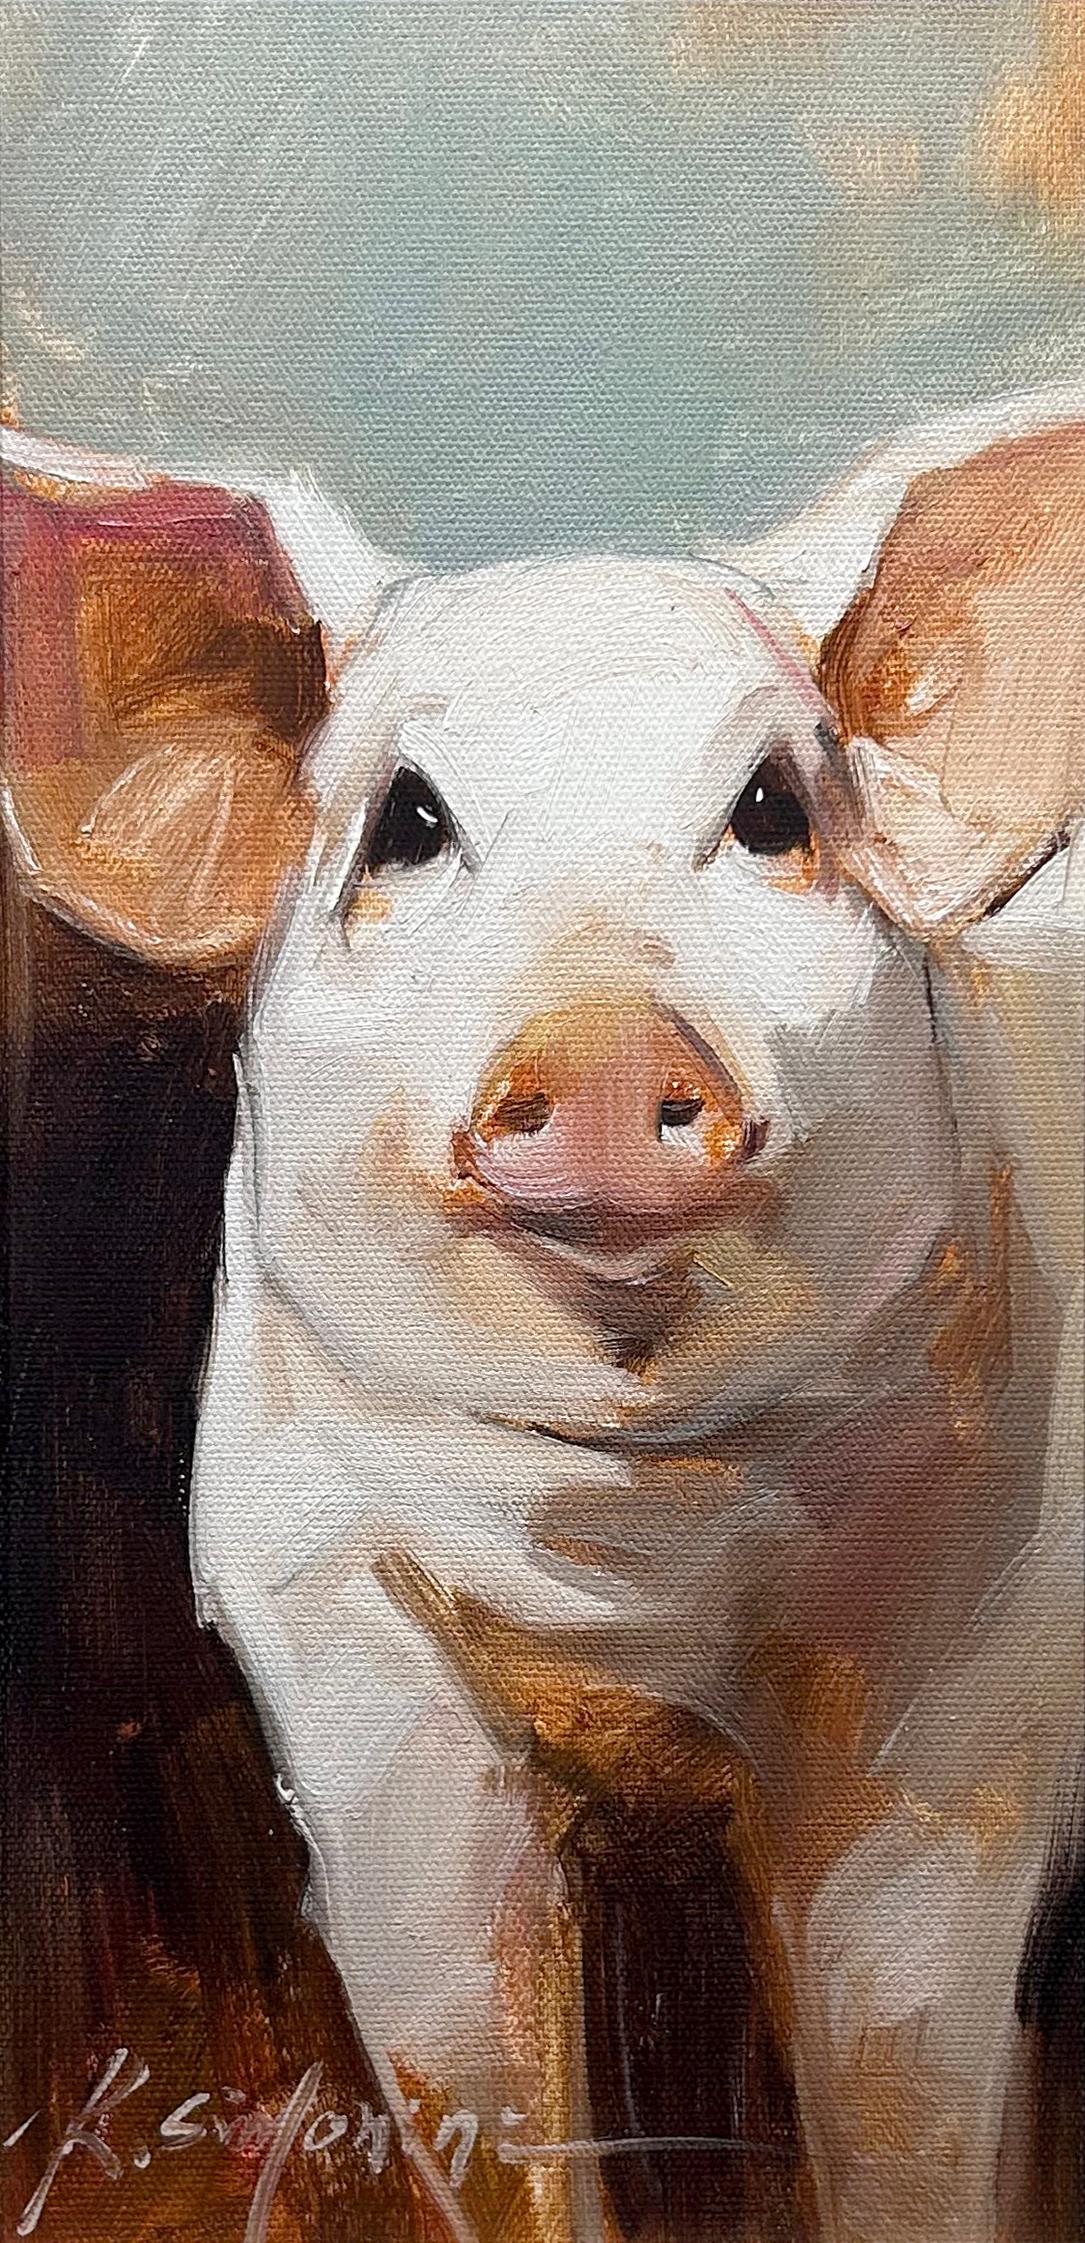 Cette peinture de l'artiste Ray SIMONINI intitulée "Emmett" est une peinture à l'huile sur toile 16x8 représentant un cochon rose sur un fond coloré. 

A propos de l'artiste :
SIMONINI est né en Chine en 1981. Il est intrigué par les illustrations